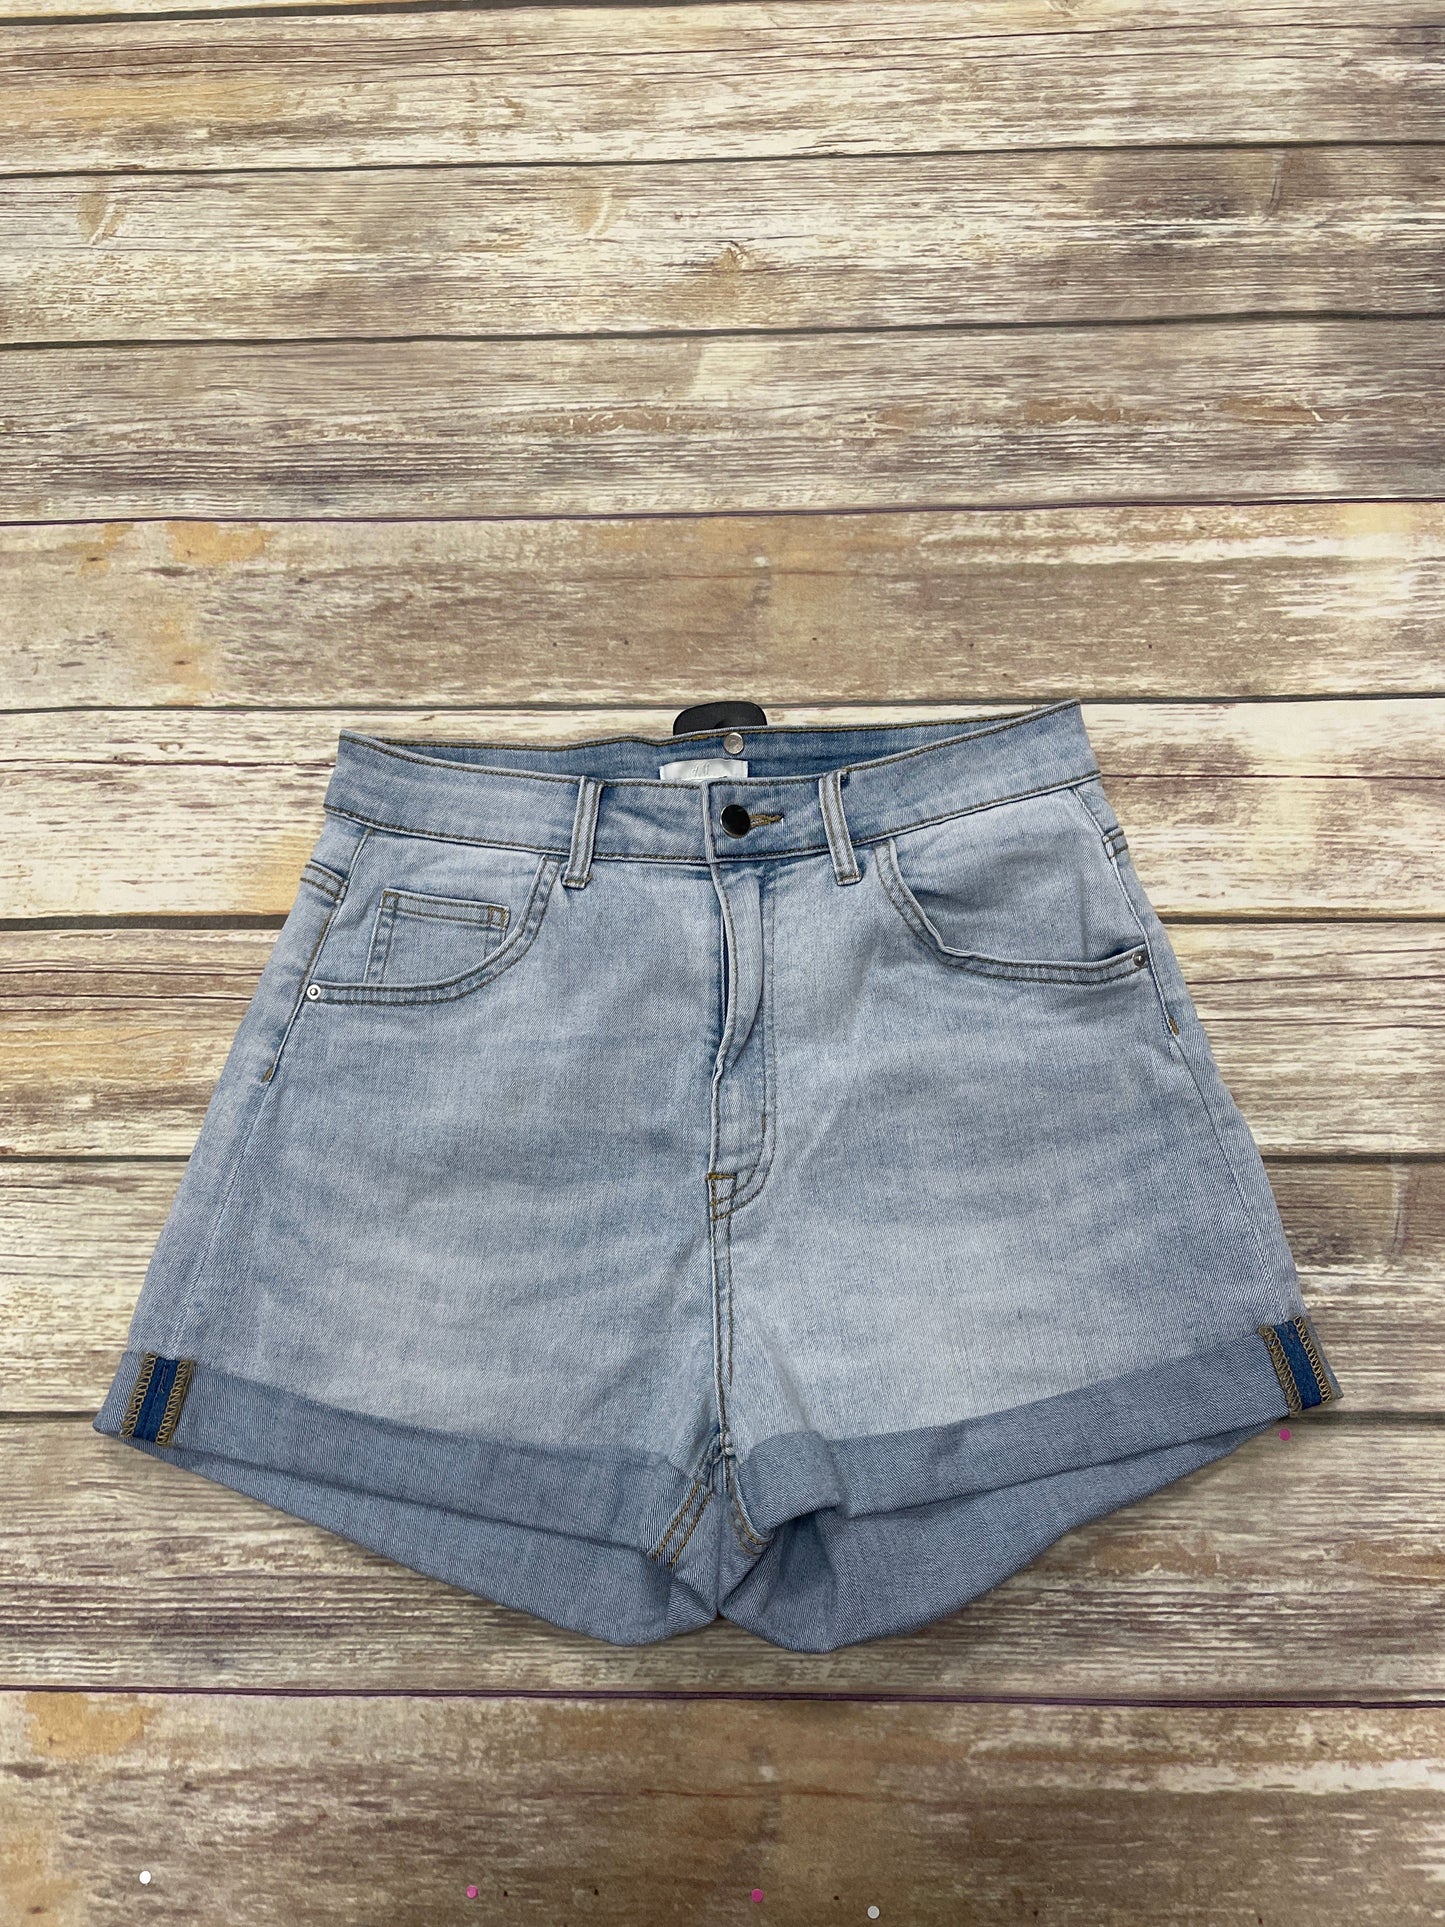 Blue Denim Shorts H&m, Size 12